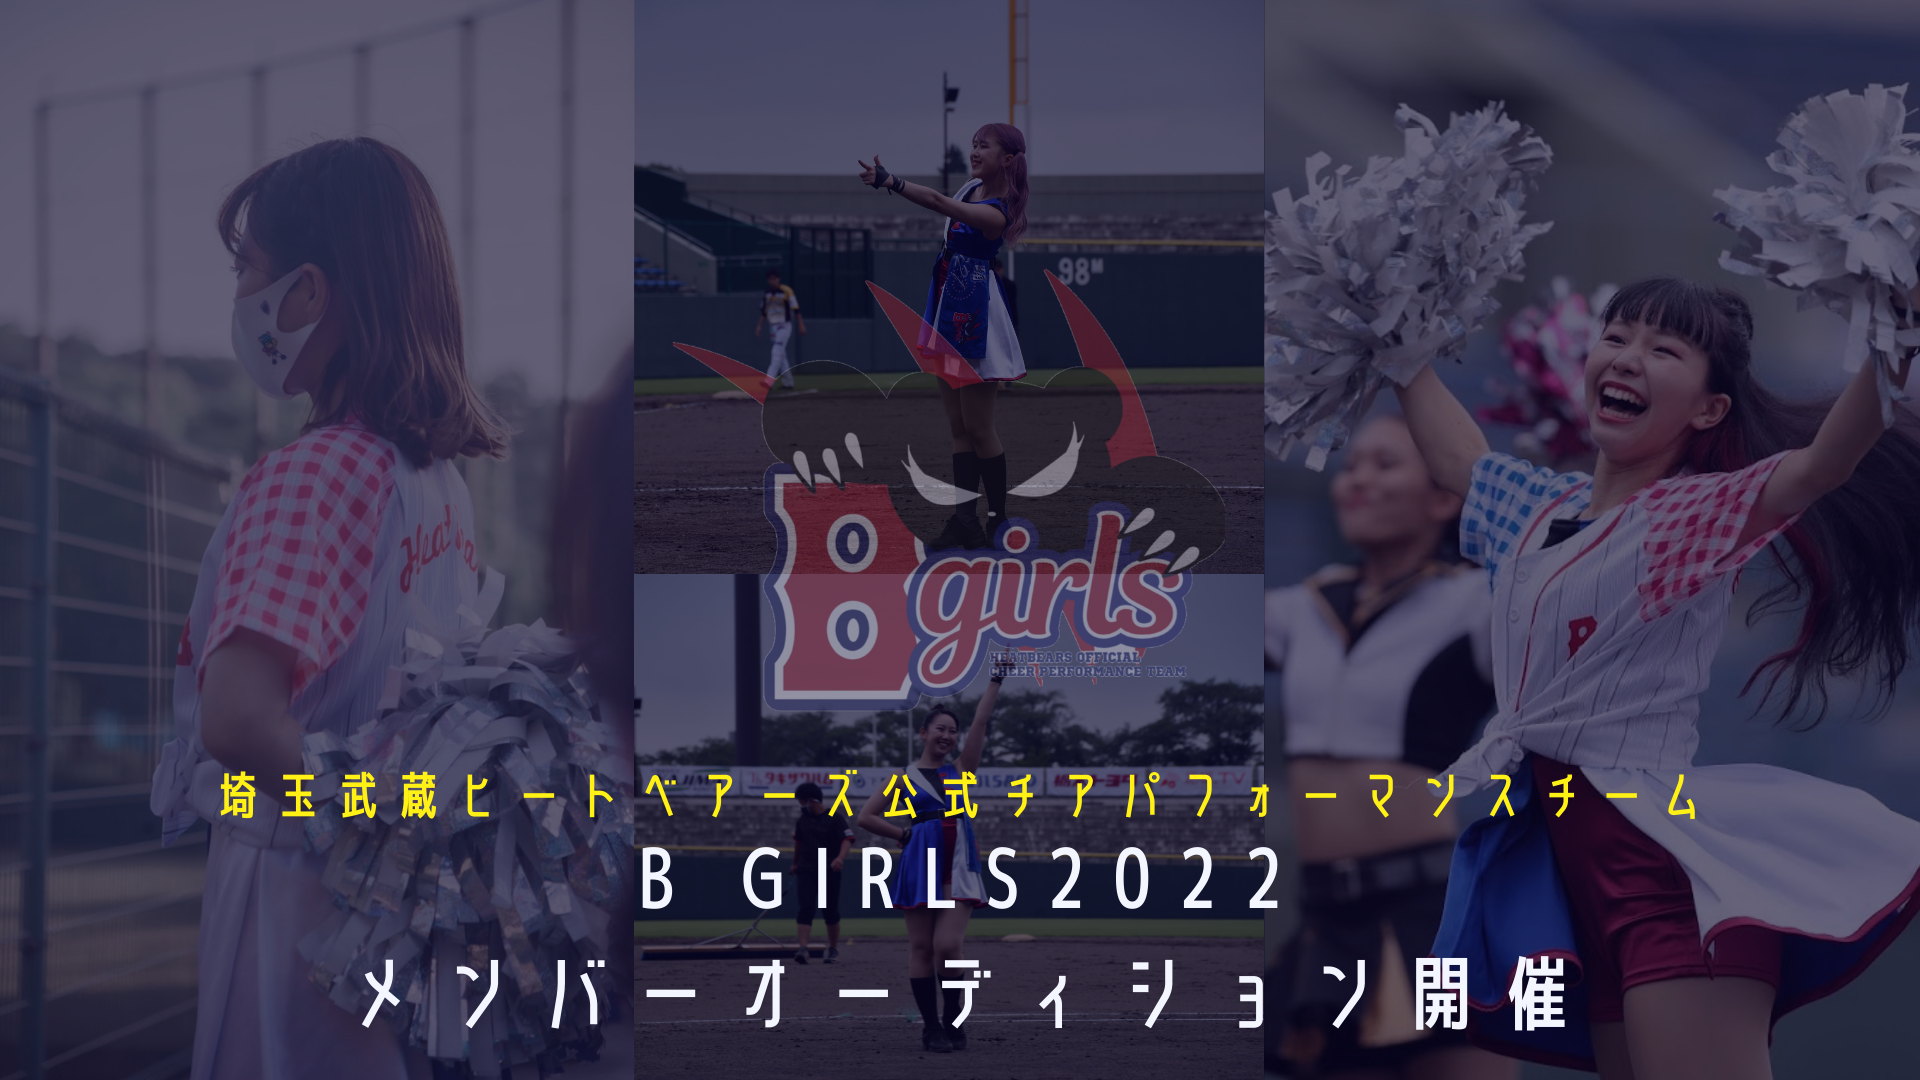 オーディション 埼玉武蔵ヒートベアーズ公式チアB girls オーディション 結成2年目! 球場で輝く2022メンバーを募集します 主催：エイジェックスポーツマネジメント　B girls 運営事務局、カテゴリ：ダンサー